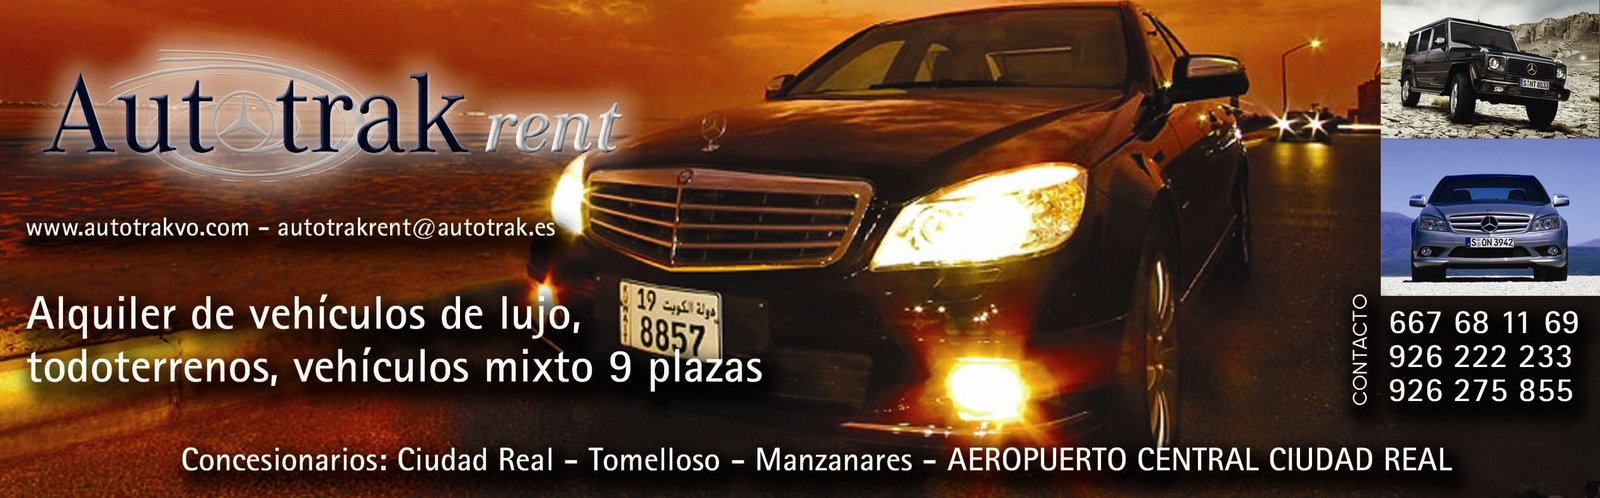 Weblog Autotrak rent  Alquiler de Coches,Vehiculos Lujo,4x4 Ciudad Real y Aeropuerto